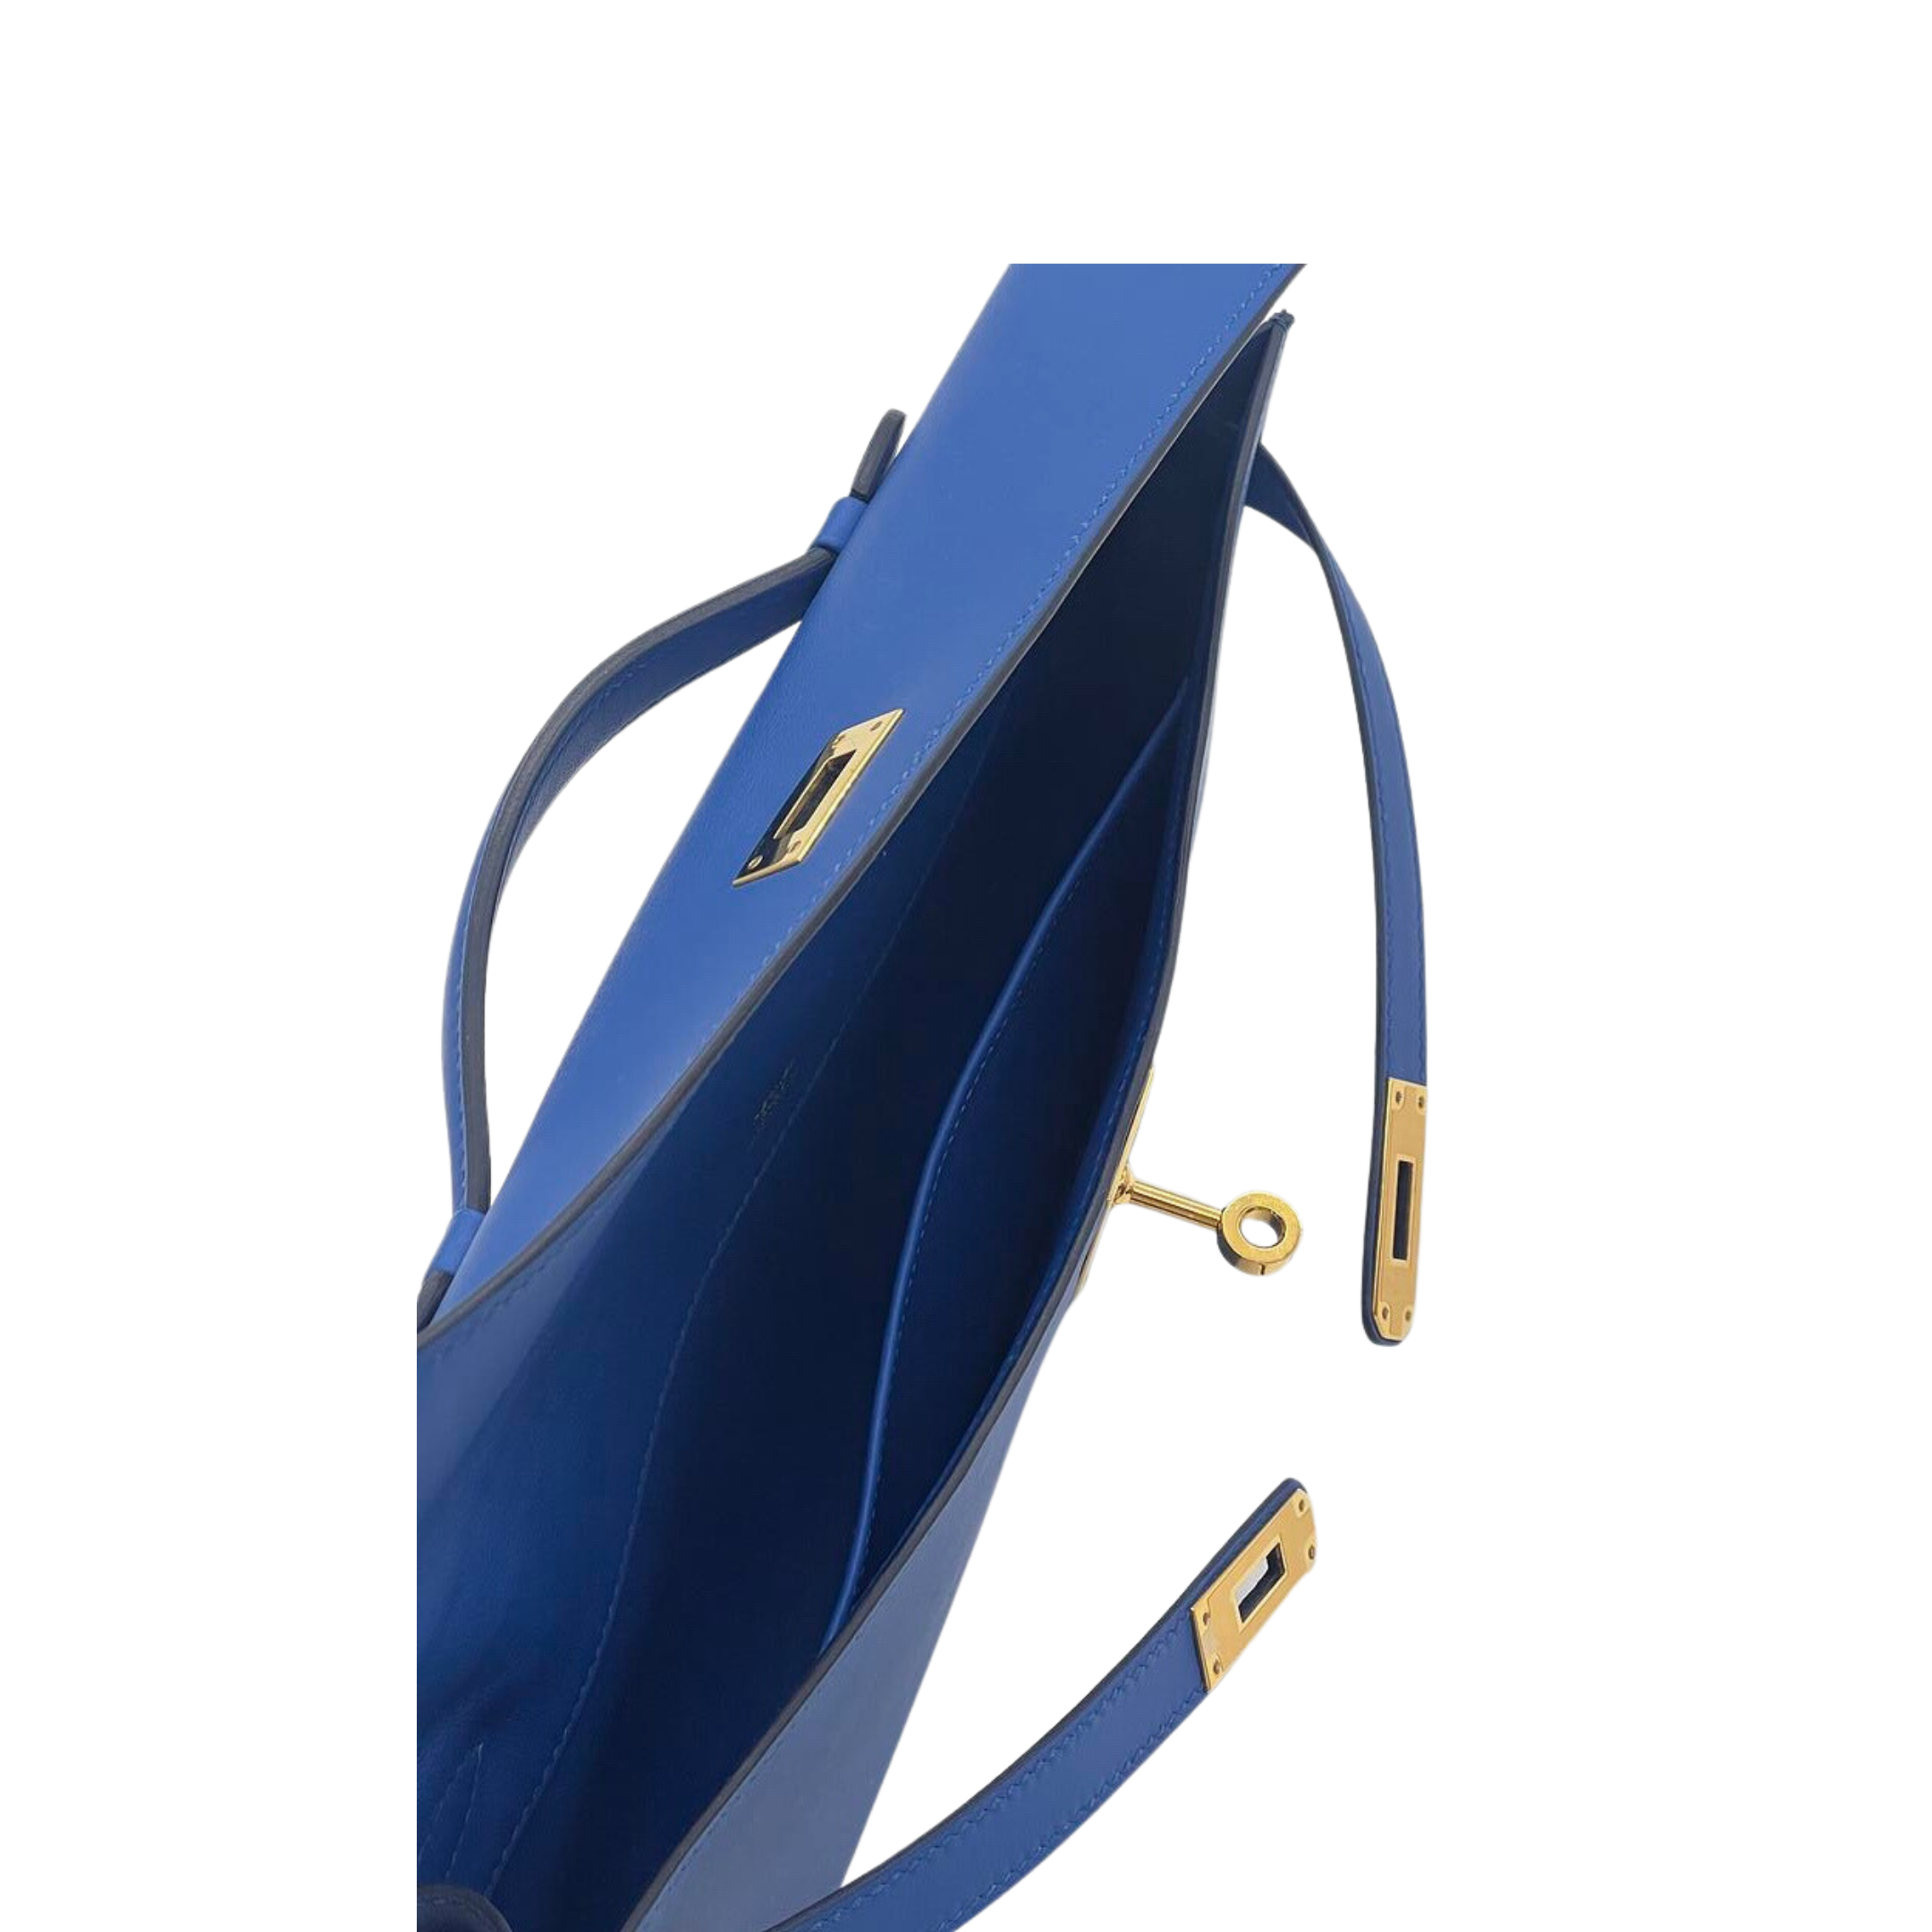 Hermes Kelly Cut Clutch Swift Calfskin Bleu France Gold Hardware | Hermes Bags